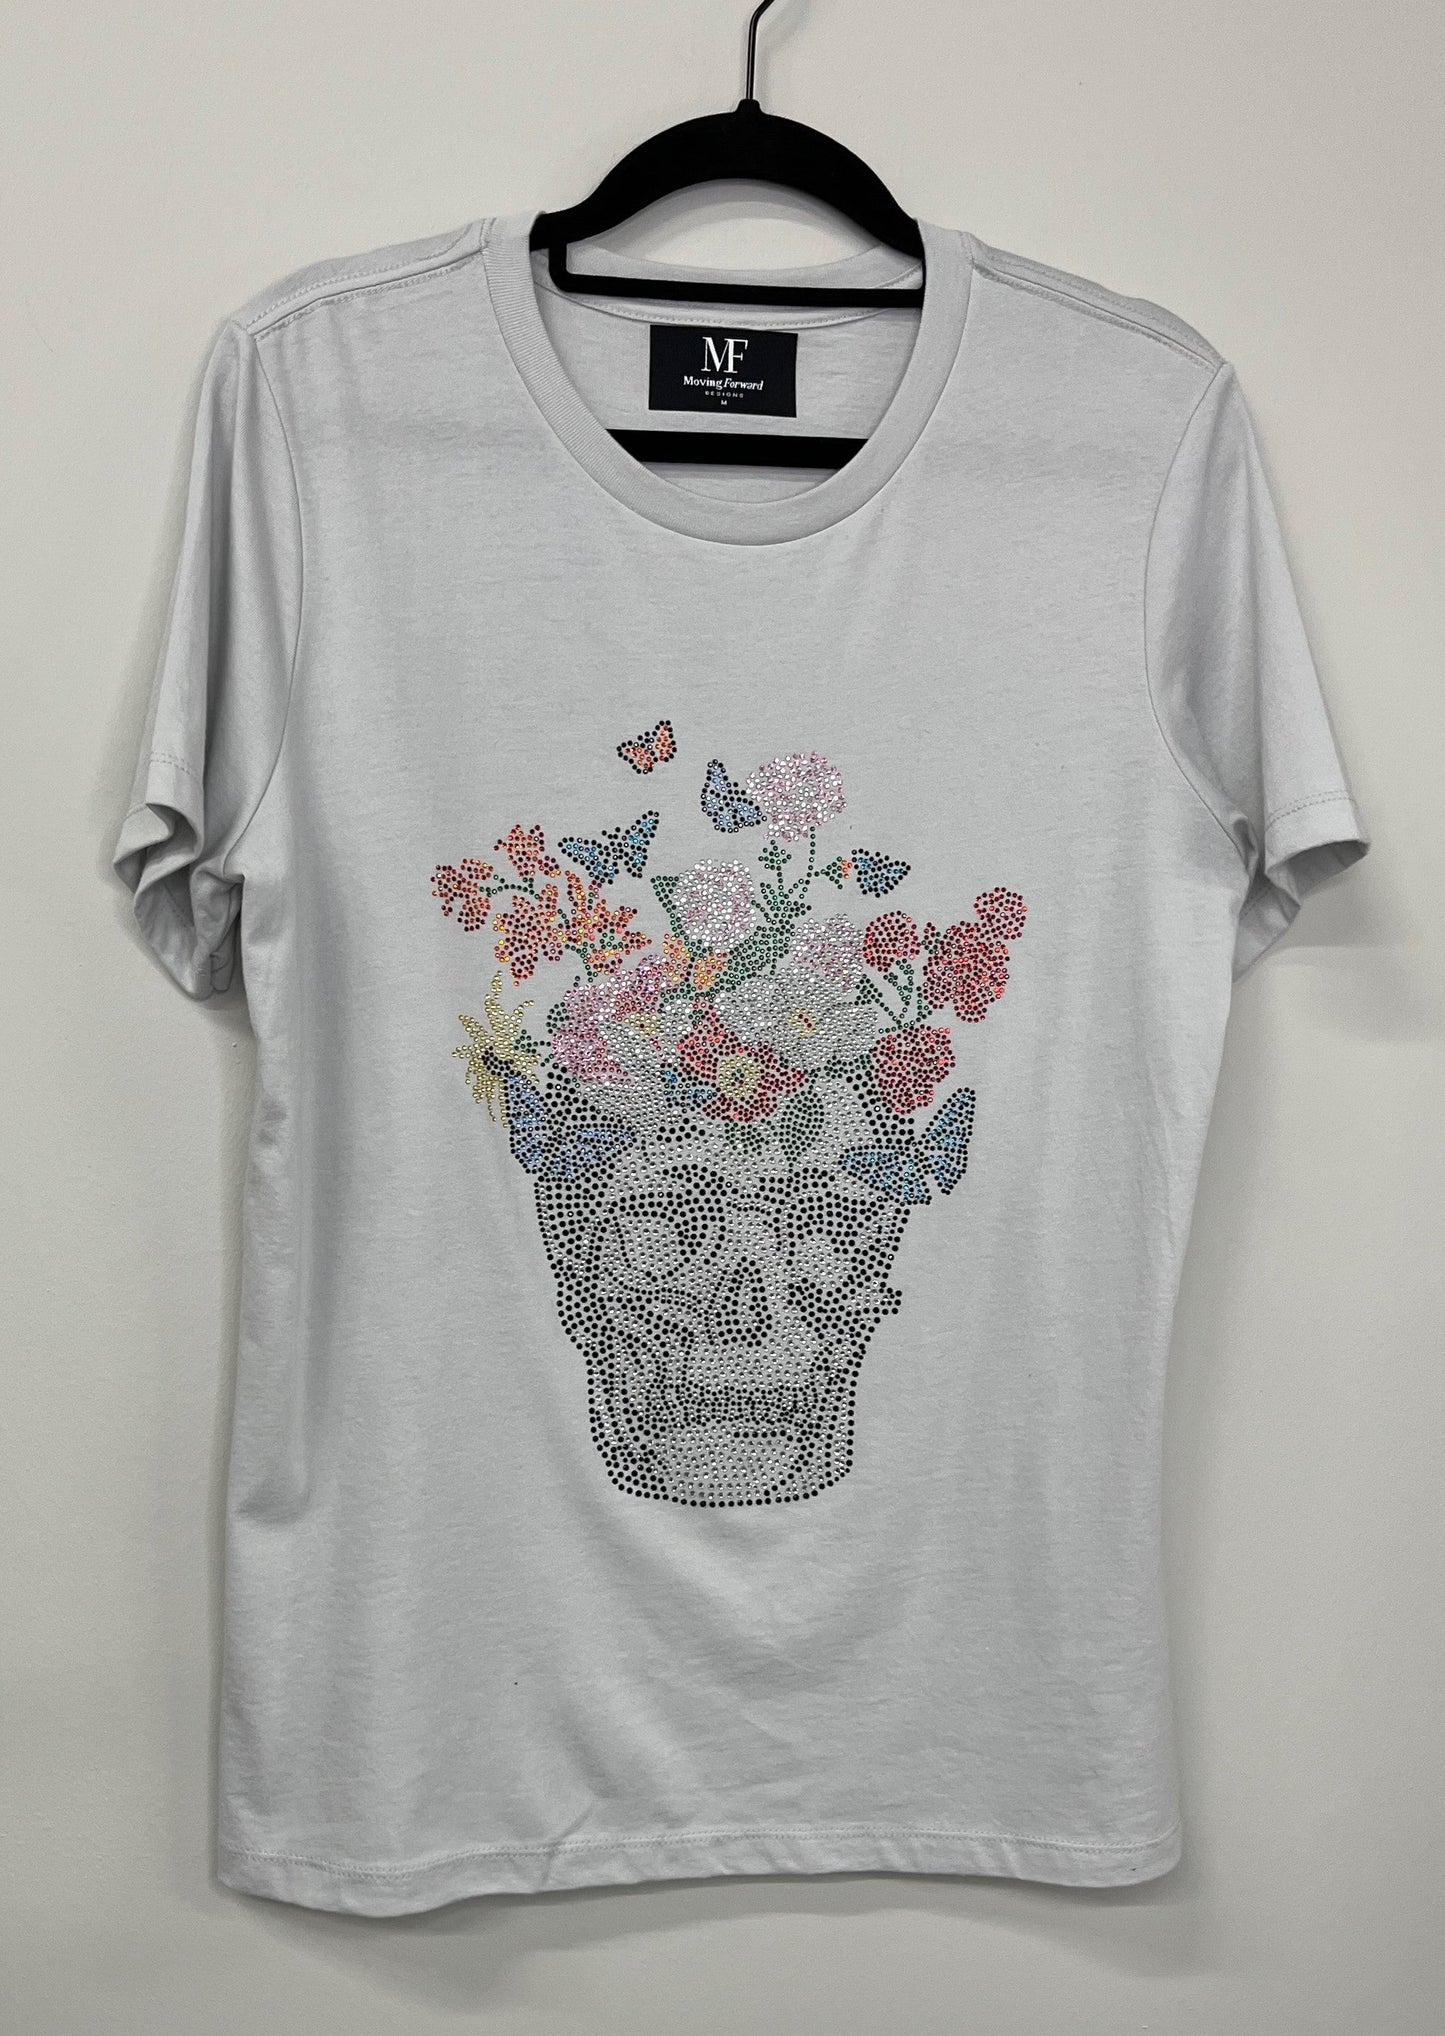 T-Shirt, Short Sleeve Light Gray, Skull Flowers